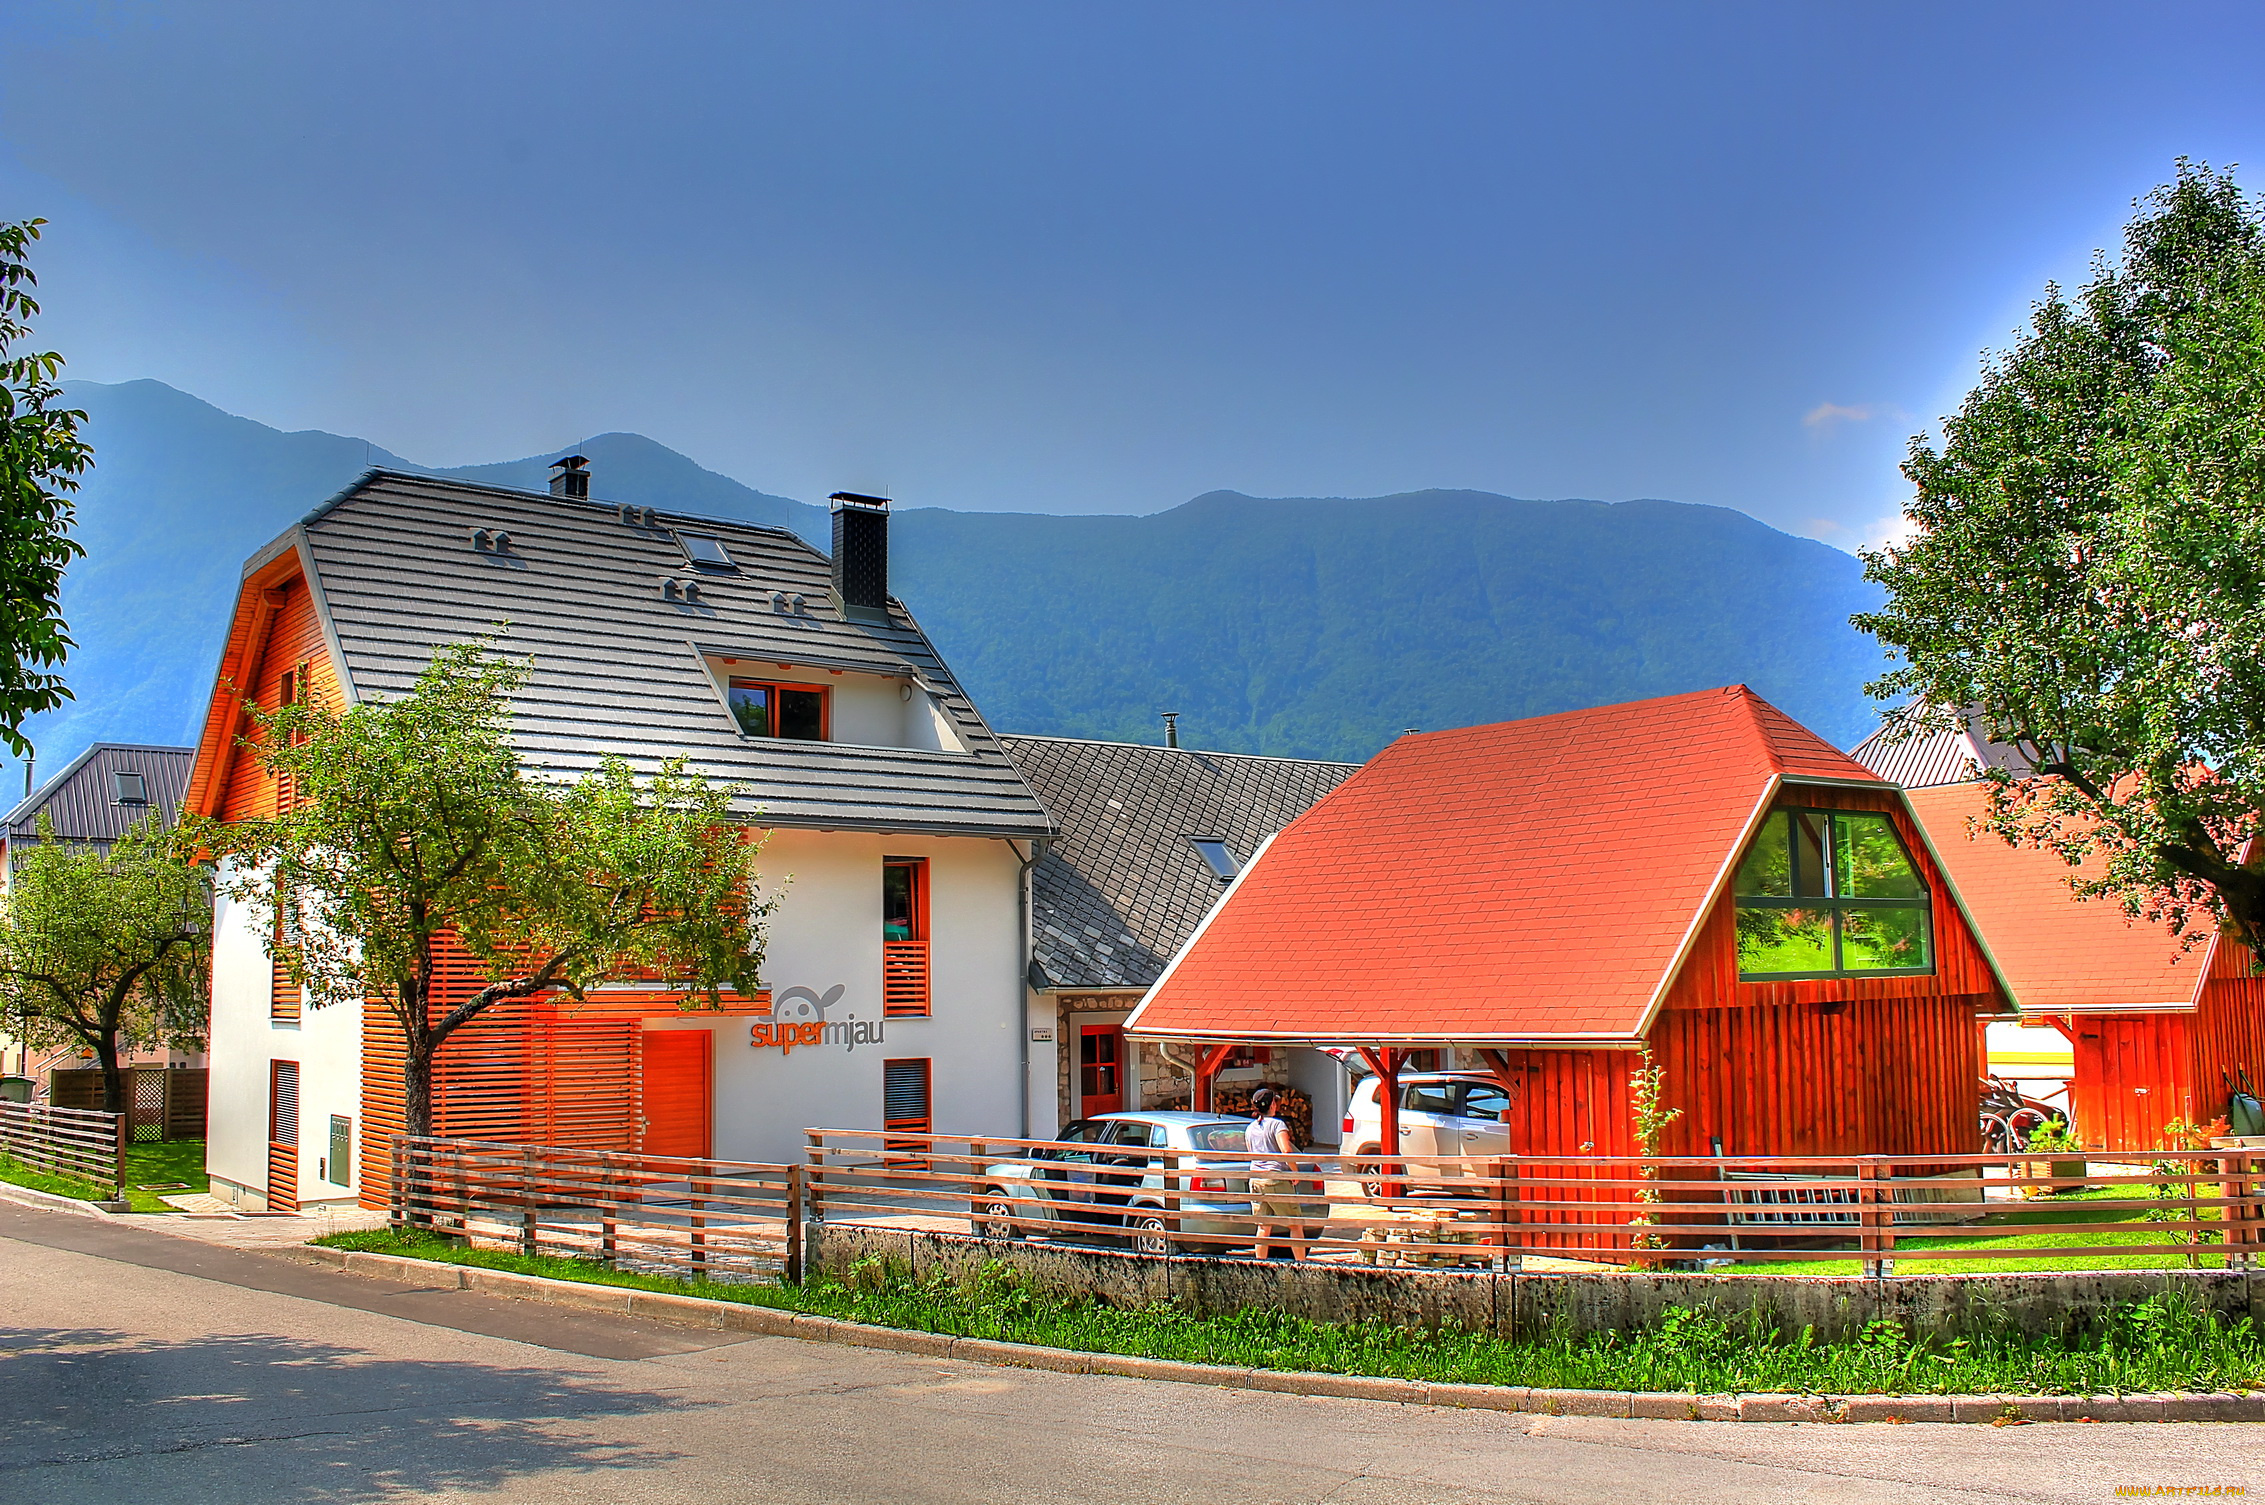 словения, bovec, разное, сооружения, постройки, дома